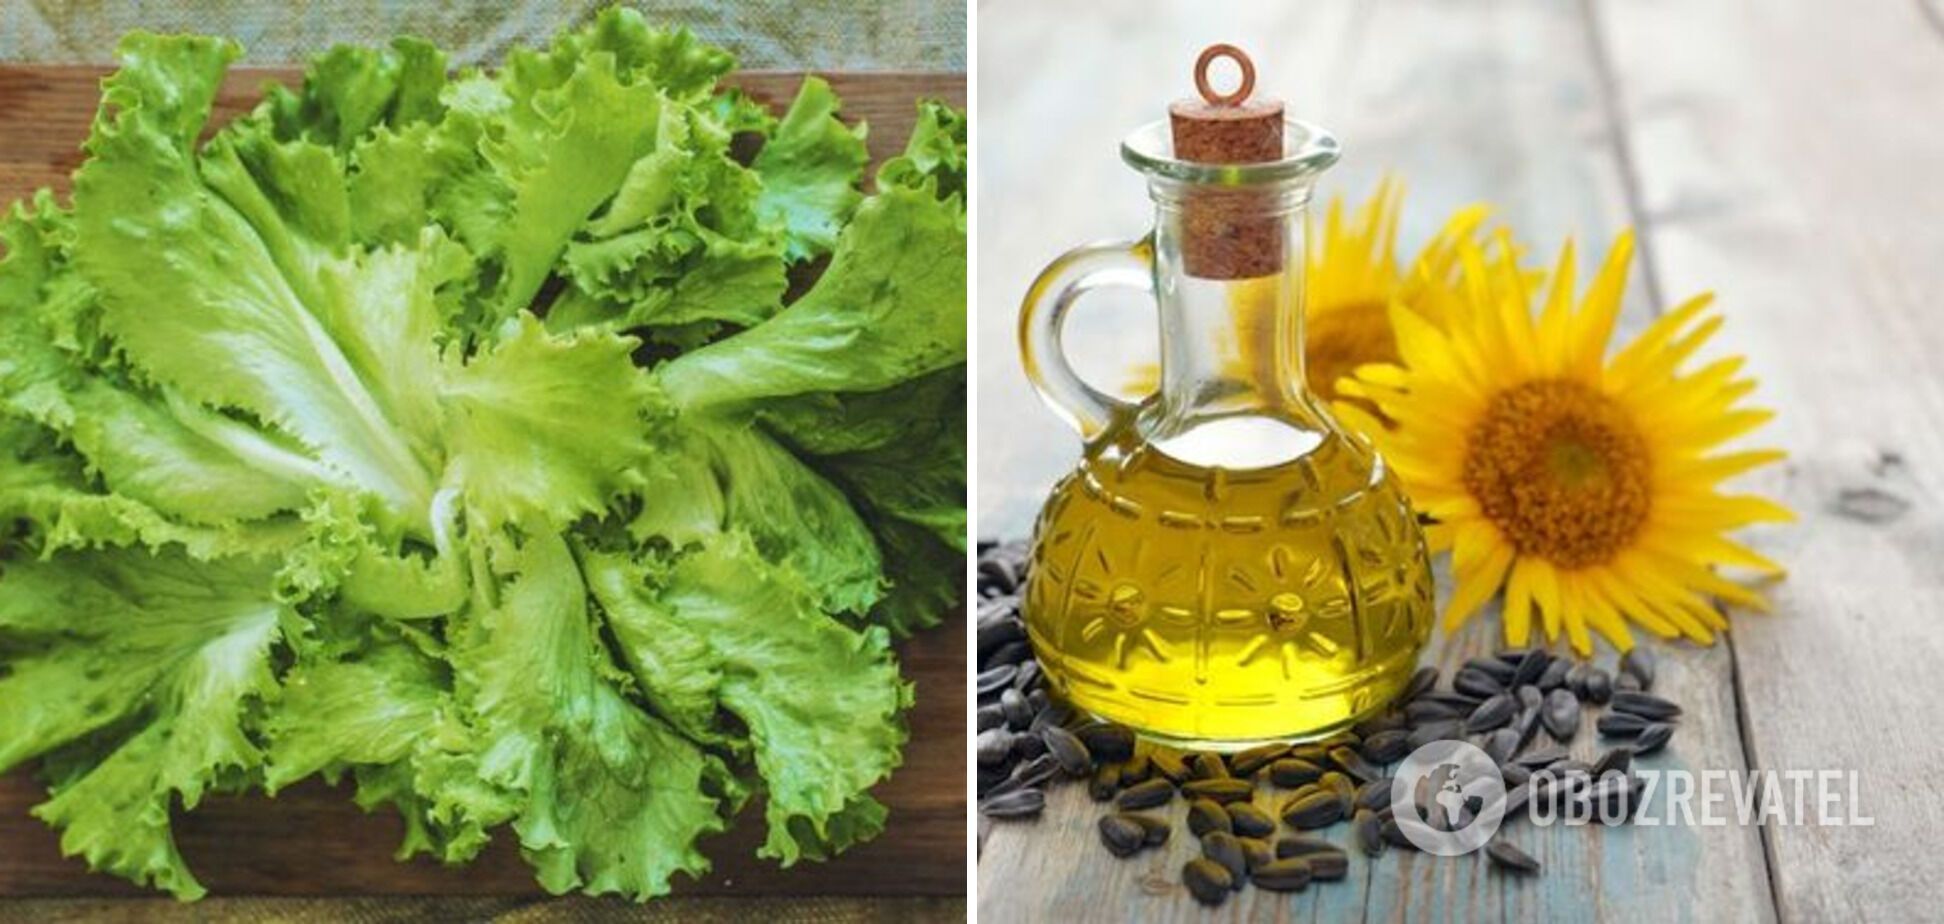 Lettuce leaves and sunflower oil